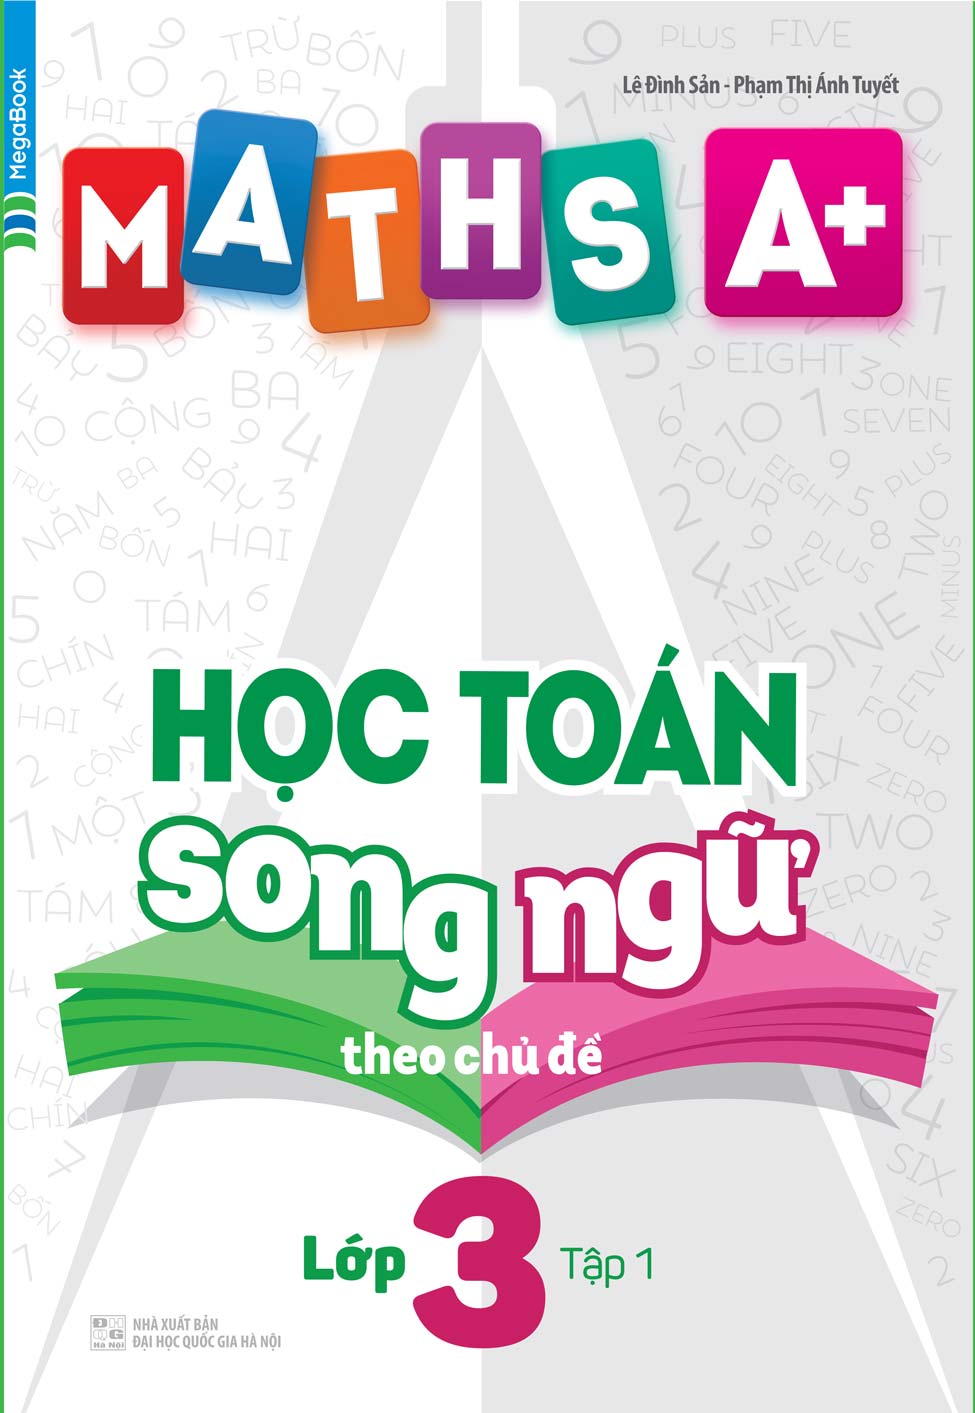 Maths A+ Học Toán Song Ngữ Theo Chủ Đề Lớp 3 Tập 1